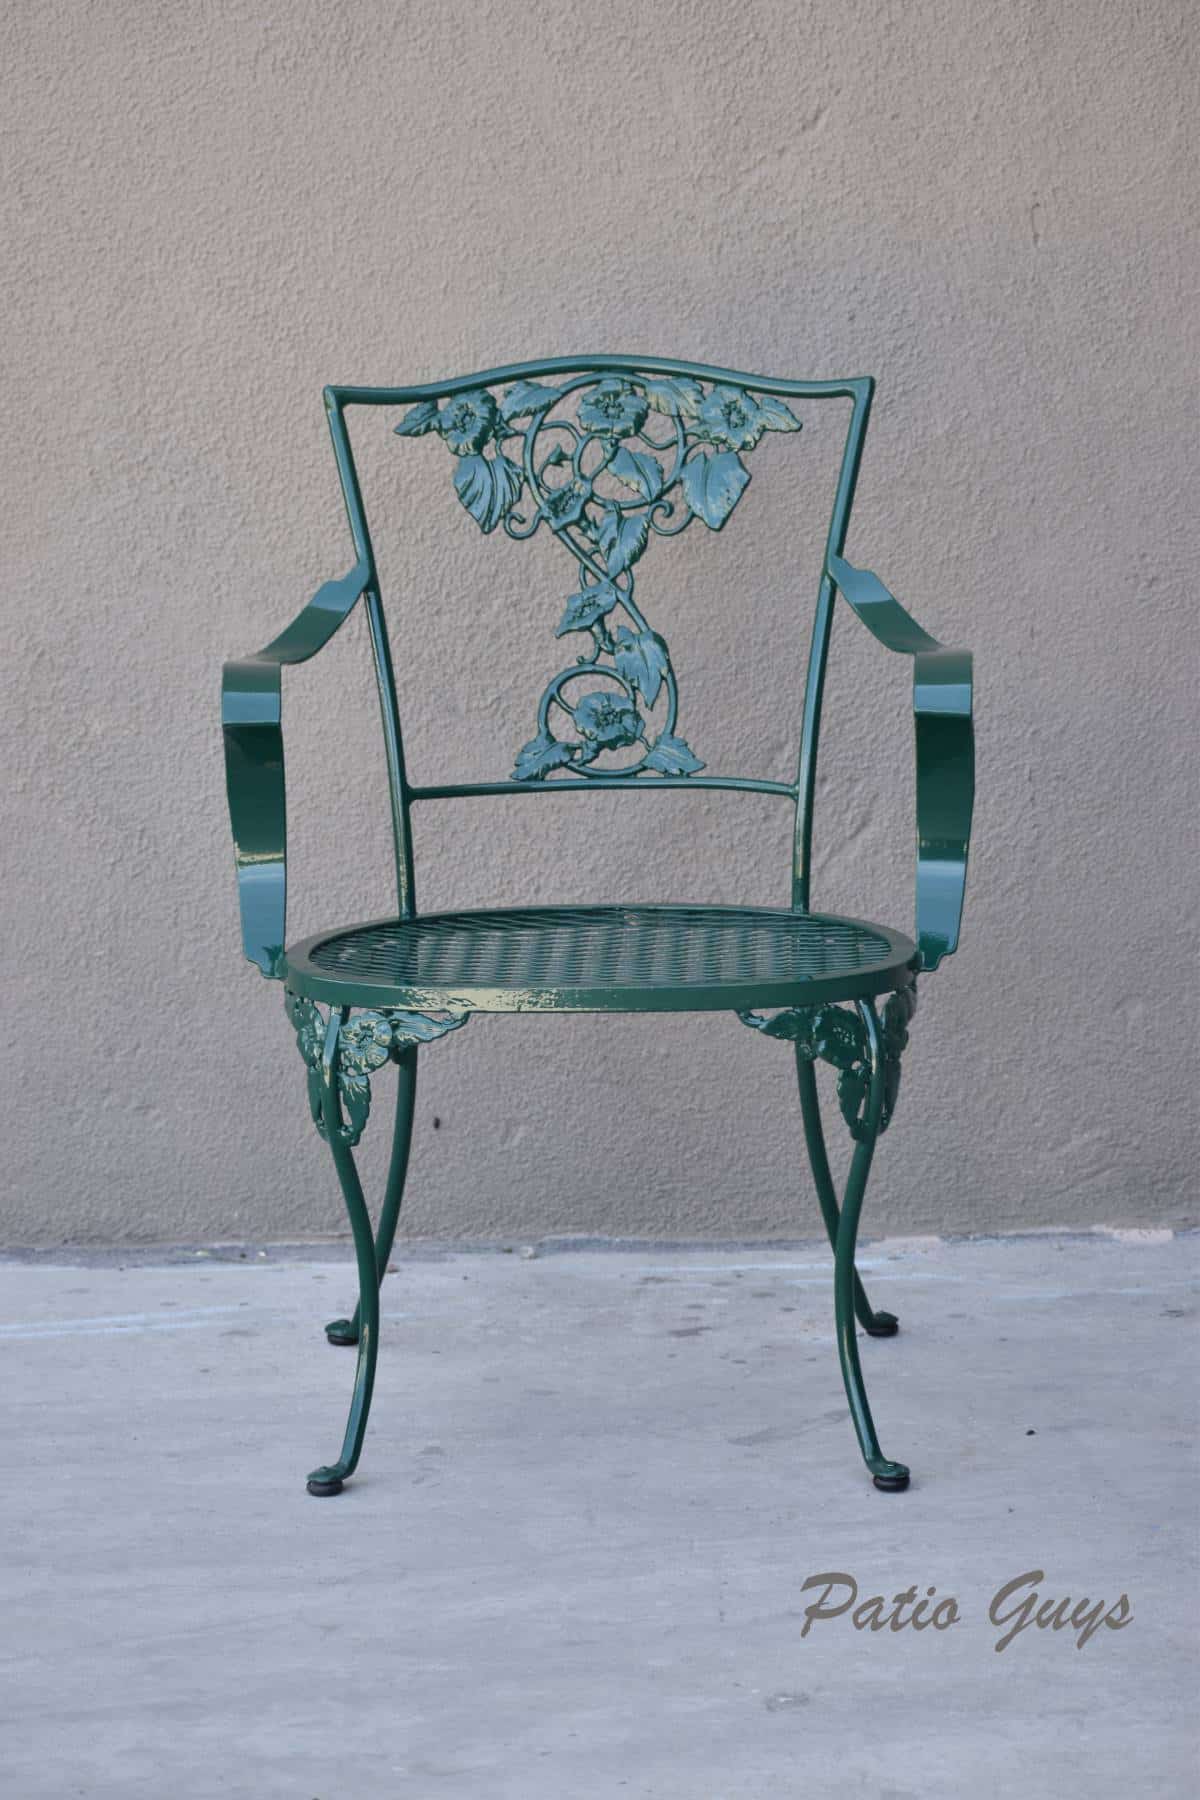 Dark green decorative garden chair with floral detail